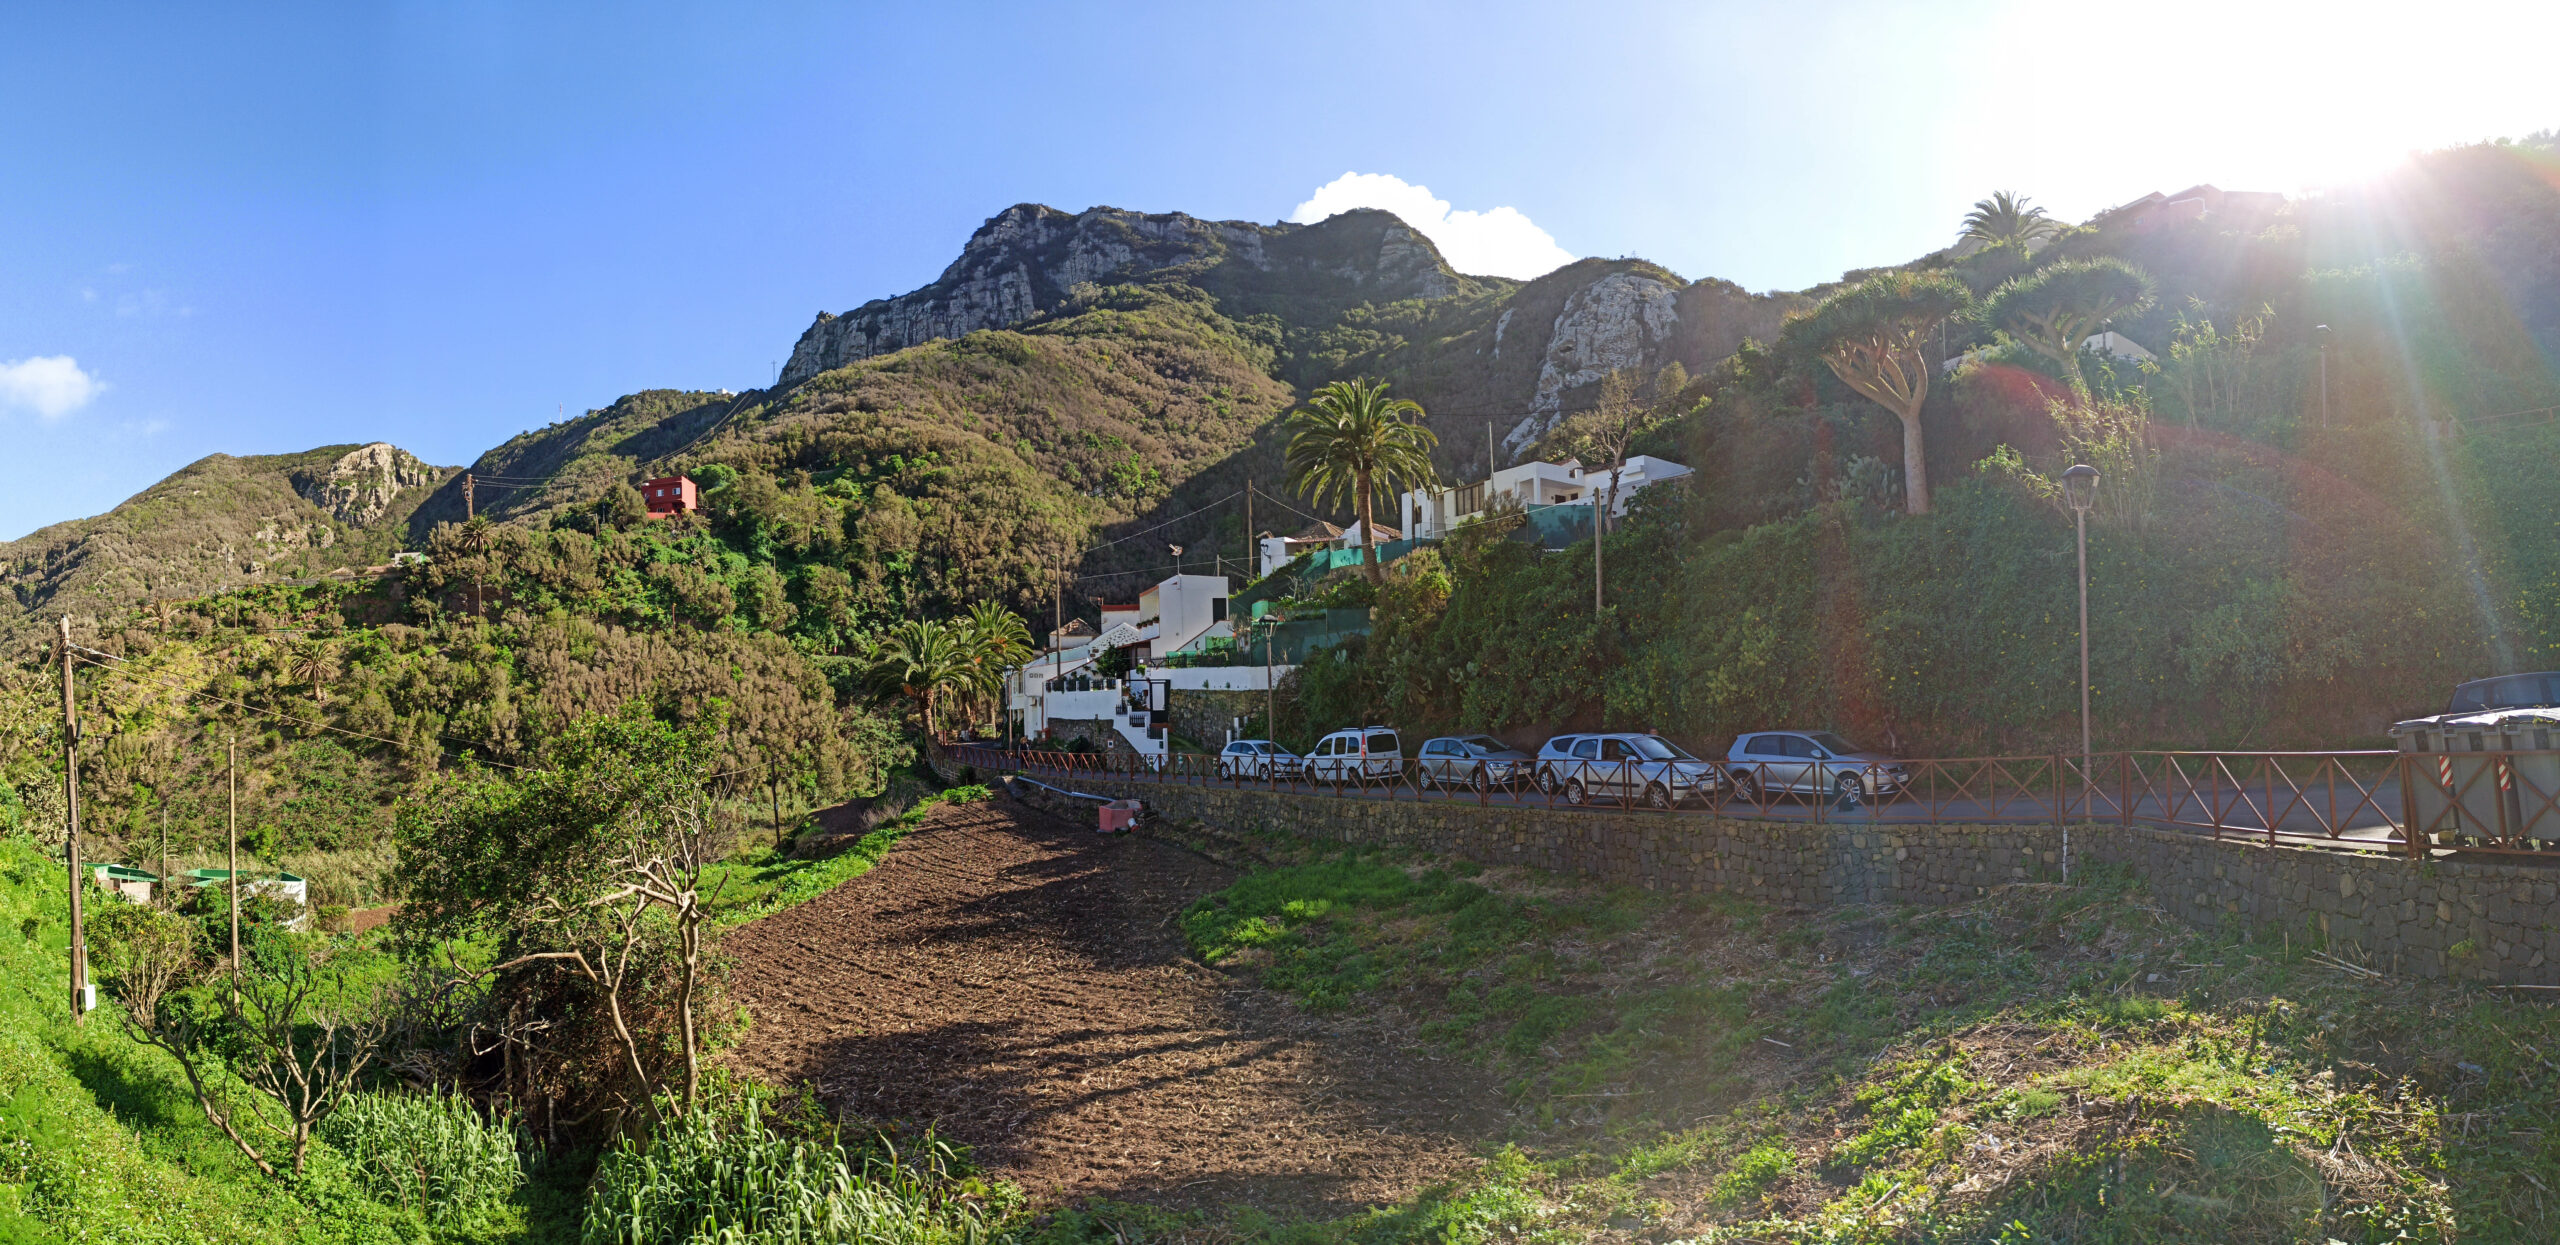 Panorama du village de Chamorga, avec les maisons et une petite route au pied des montagnes